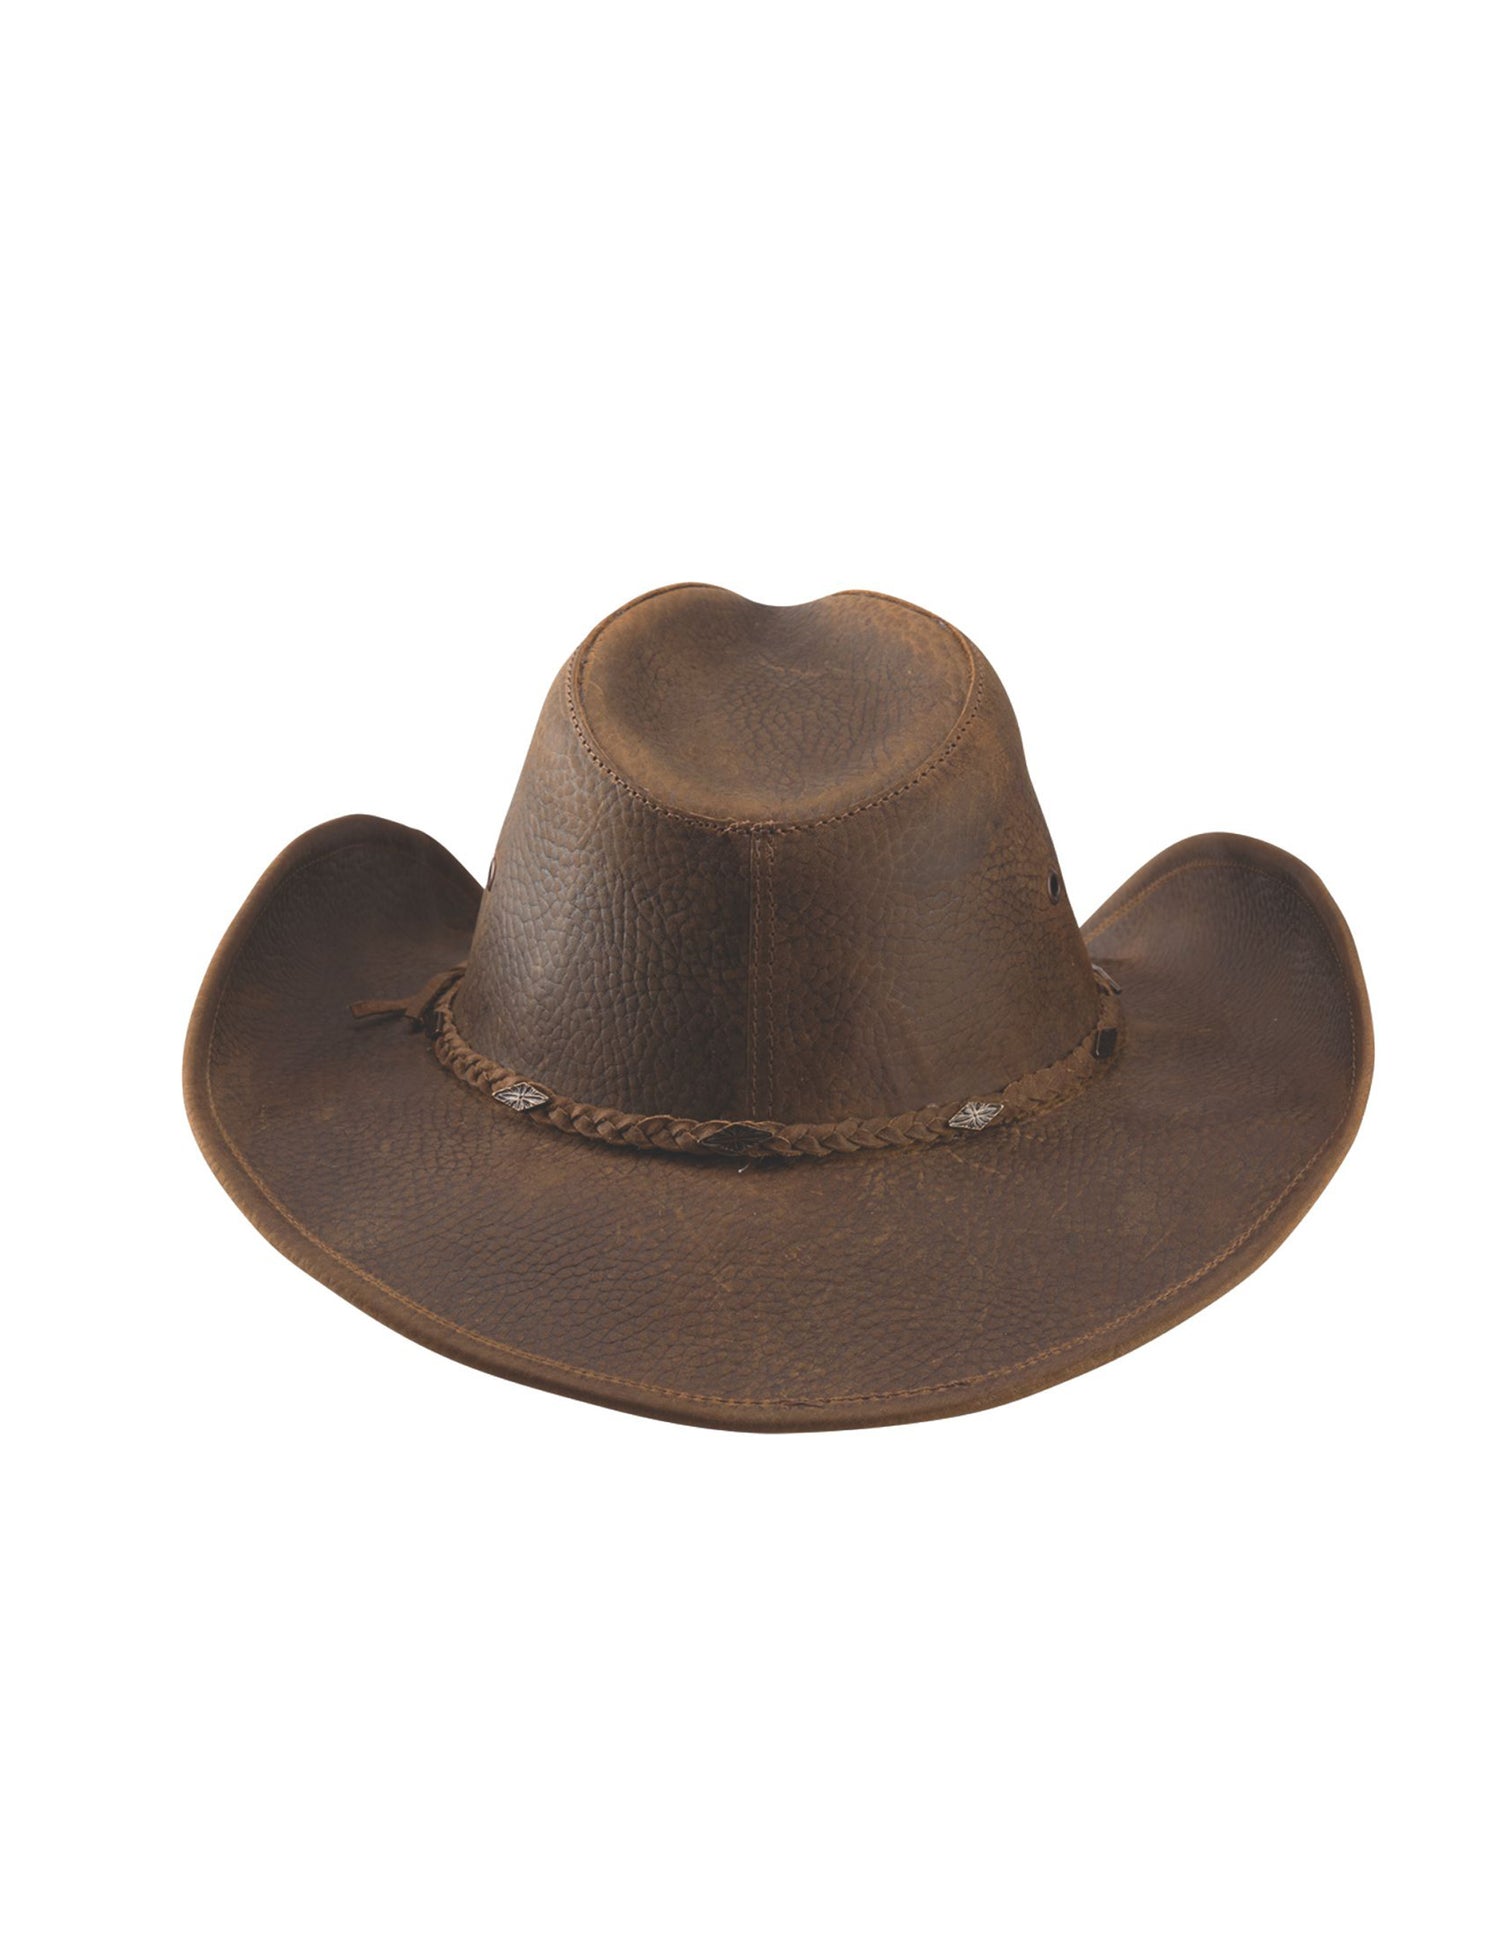 Bonnaroo Cowboy Hat by Bullhide